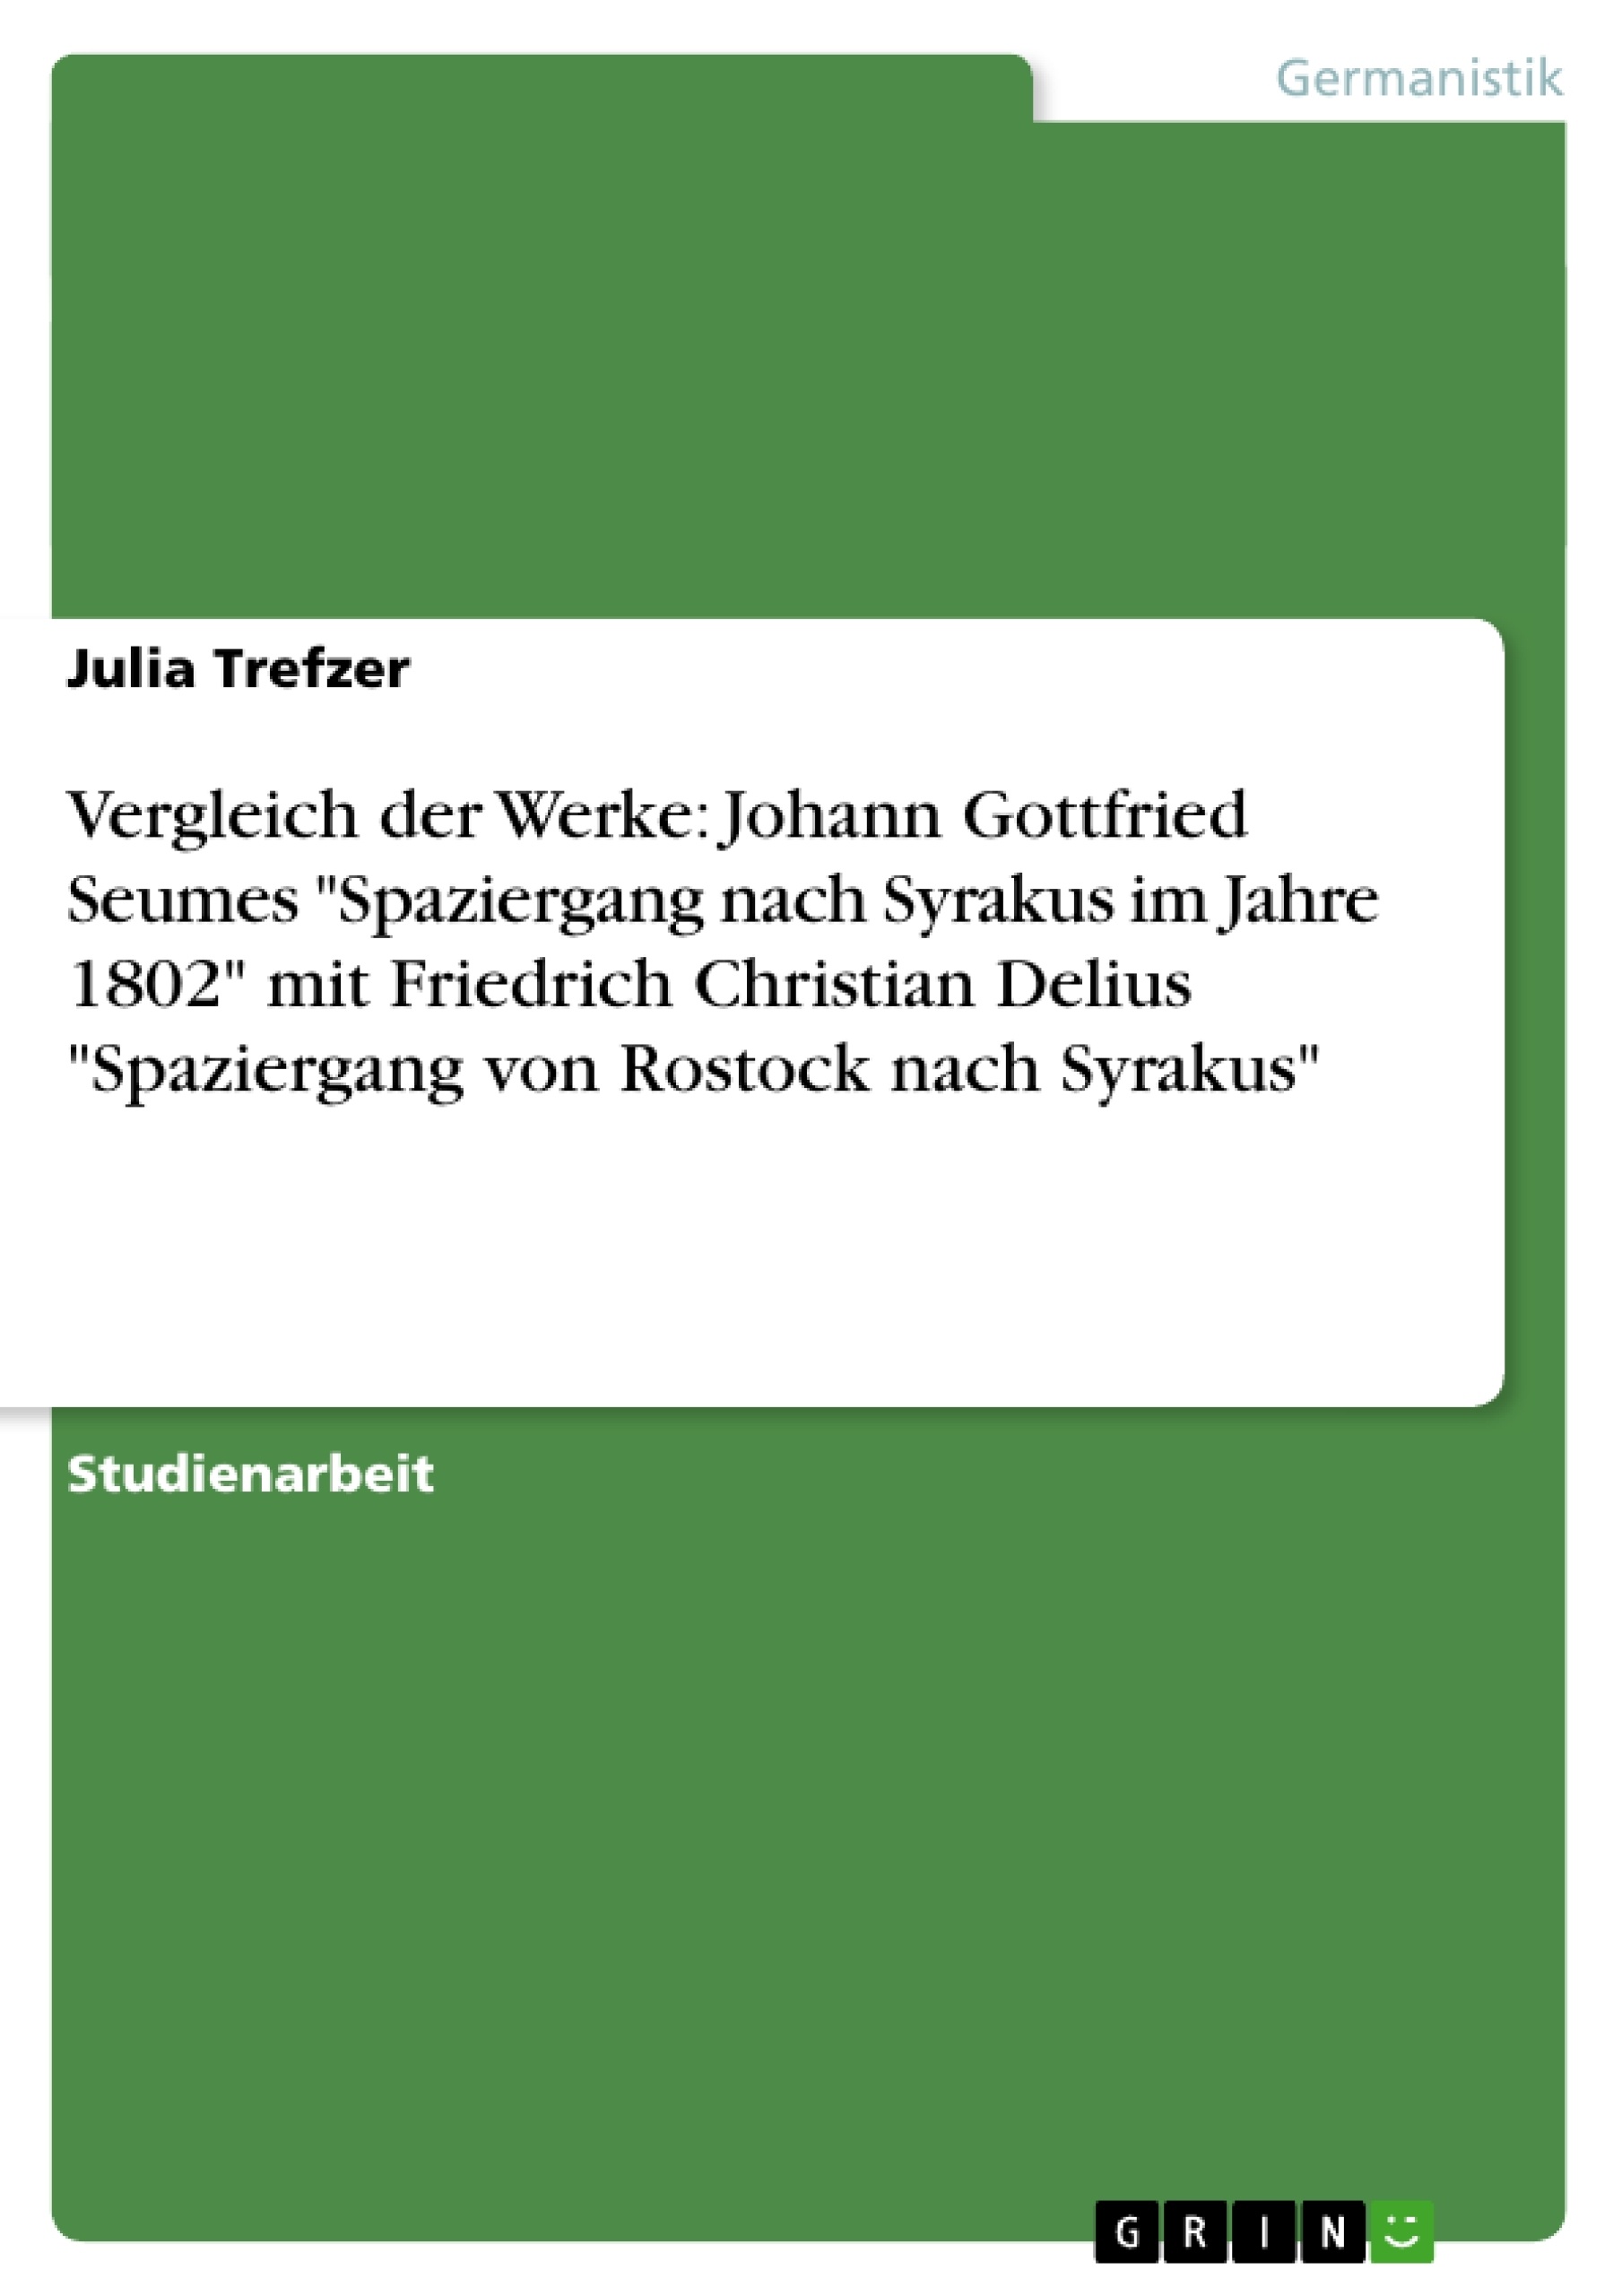 Title: Vergleich der Werke: Johann Gottfried Seumes "Spaziergang nach Syrakus im Jahre 1802" mit Friedrich Christian Delius "Spaziergang von Rostock nach Syrakus"